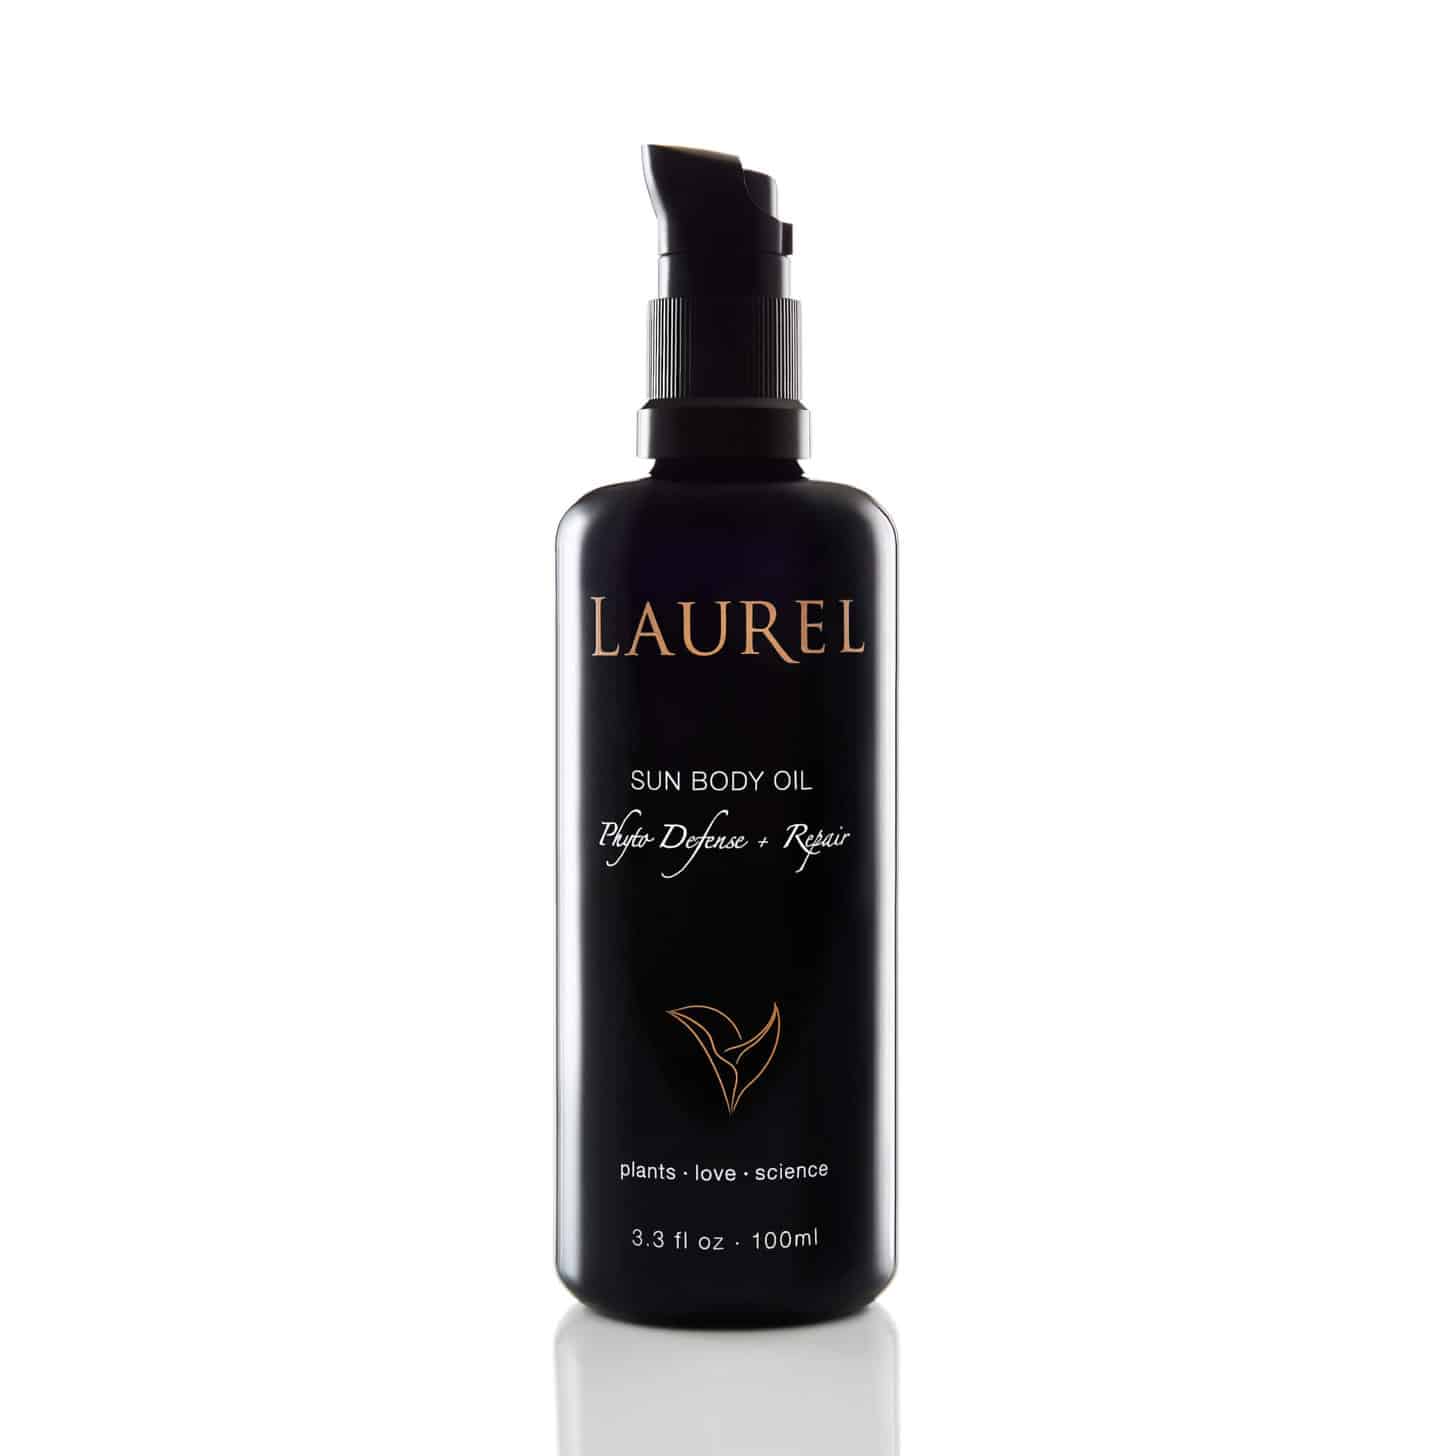 a bottle of laurel sun body oil